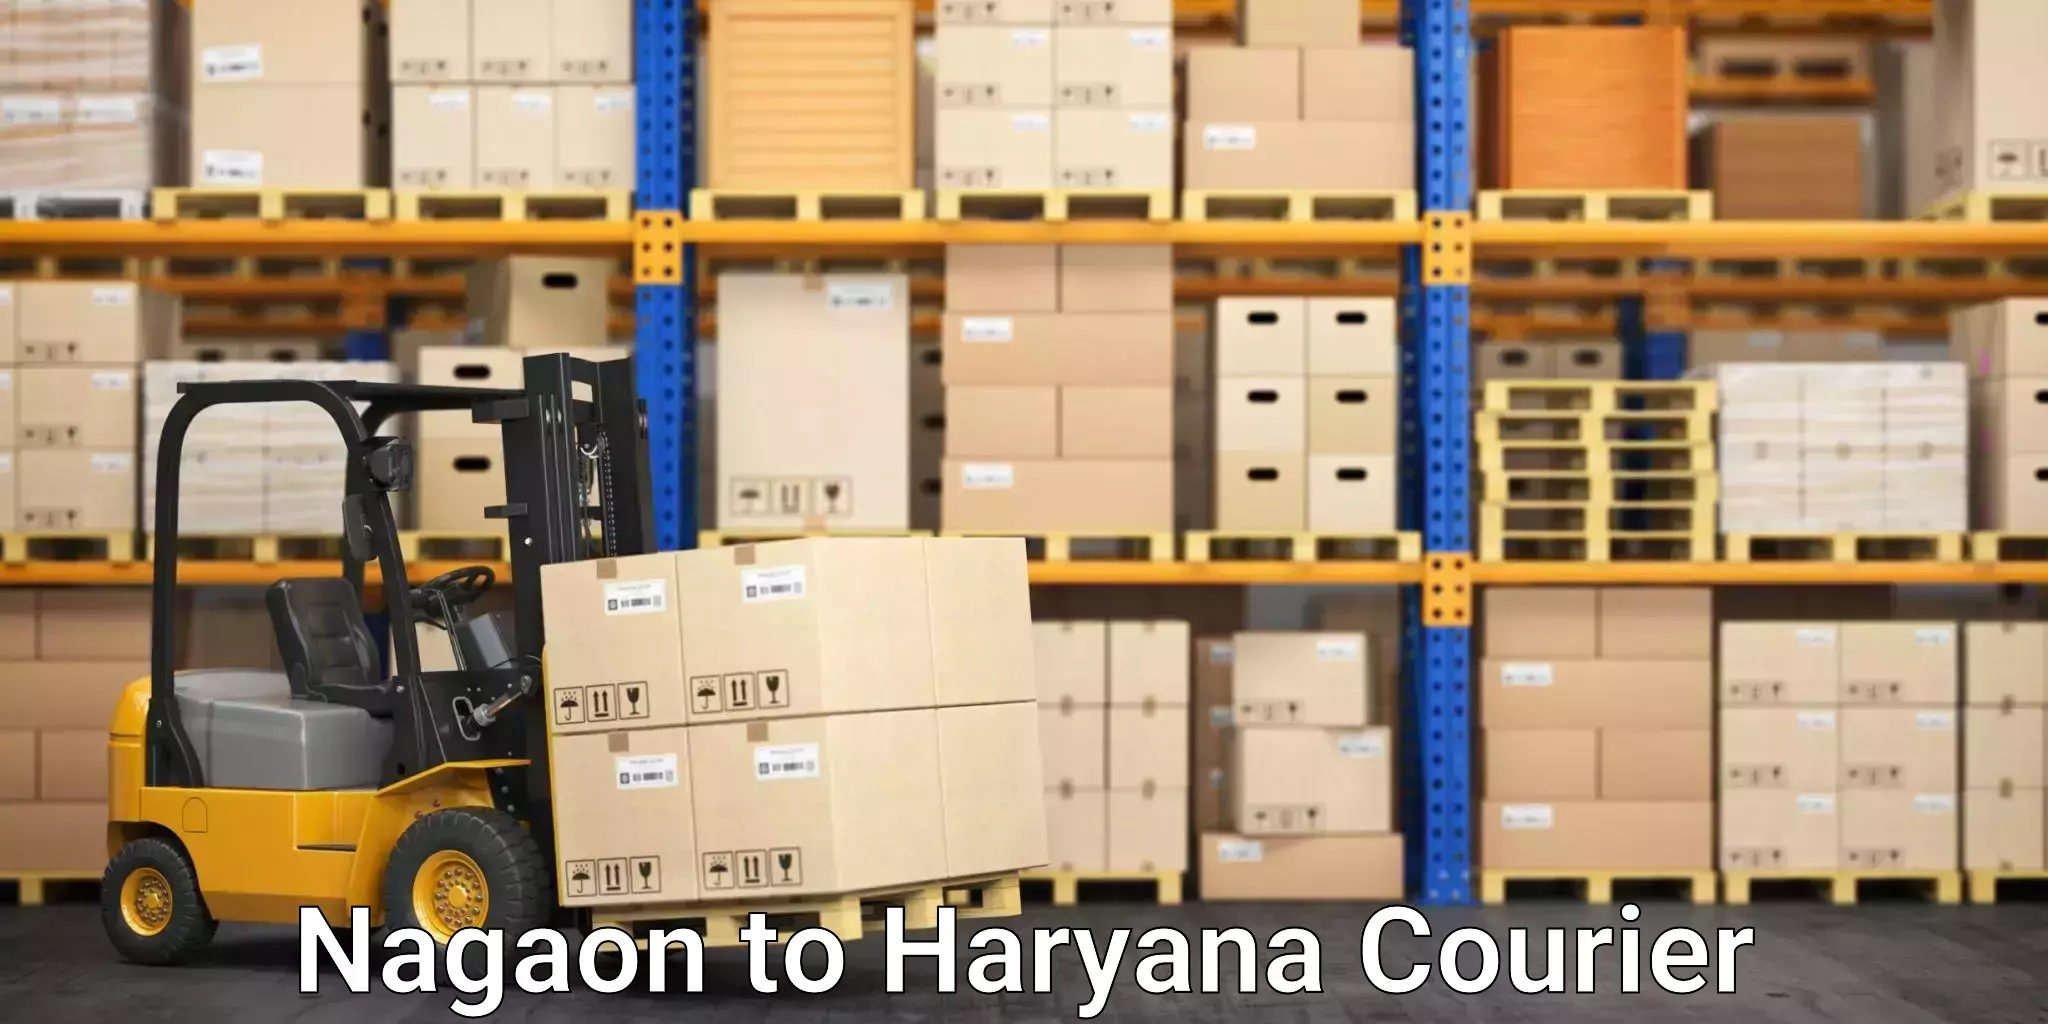 High-capacity shipping options Nagaon to Jhajjar